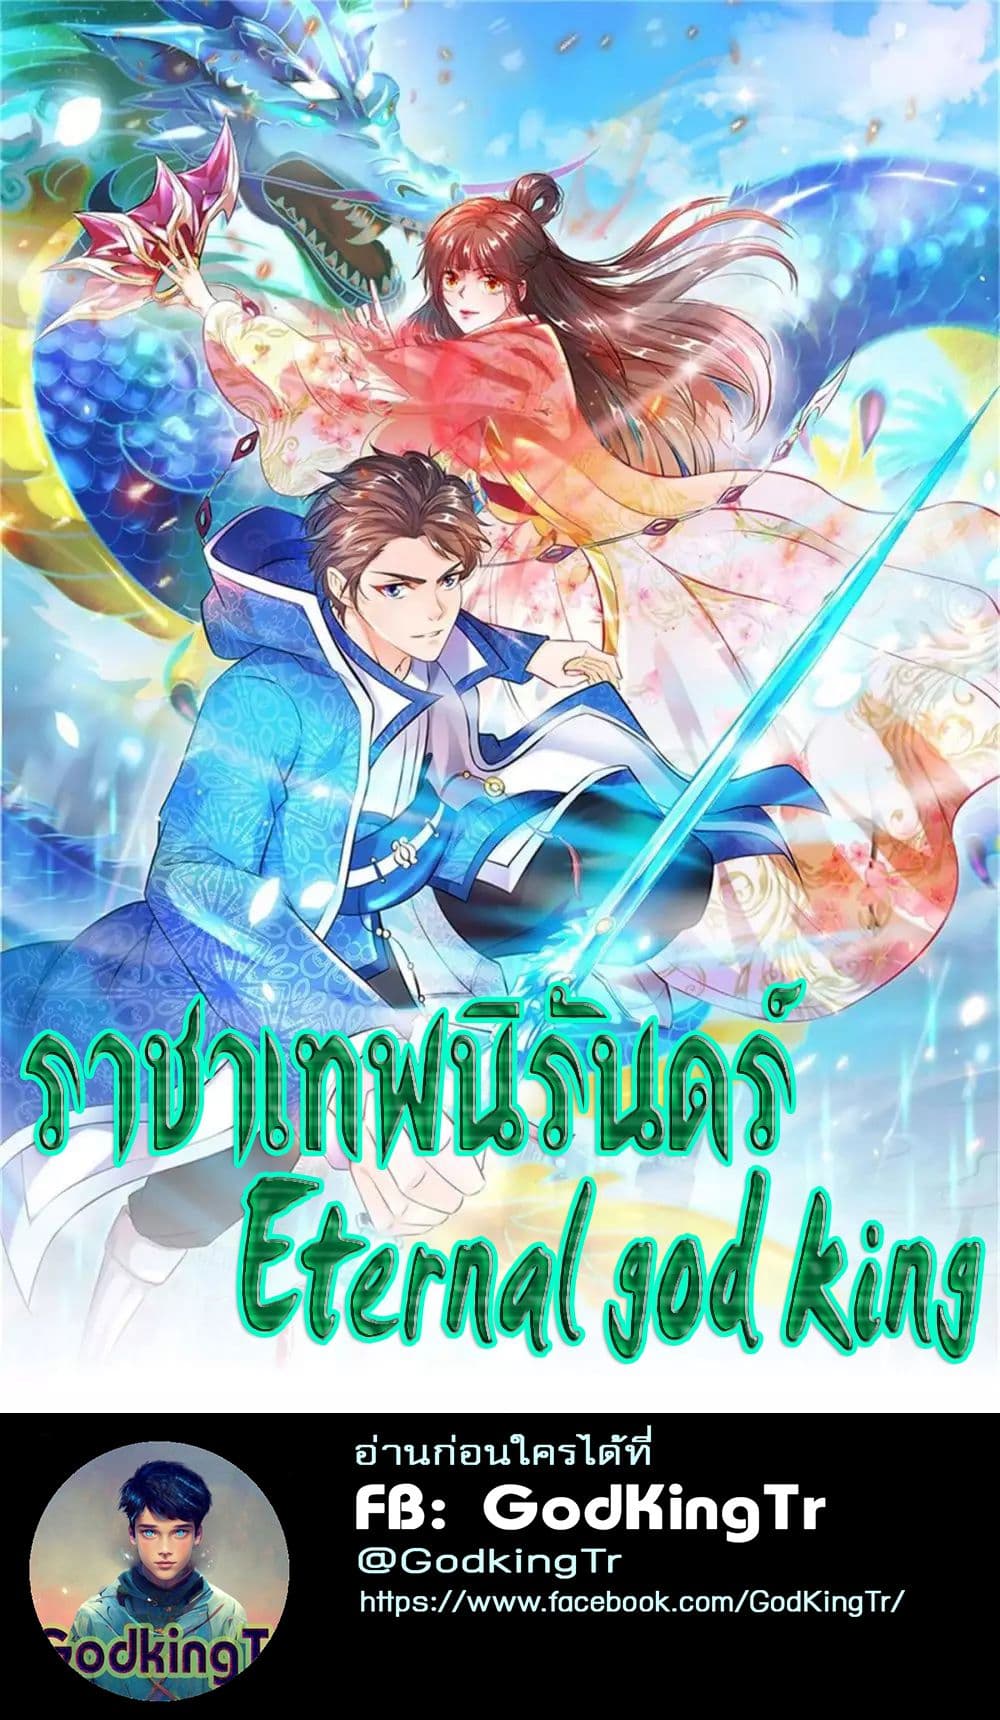 Eternal god King 34 (1)